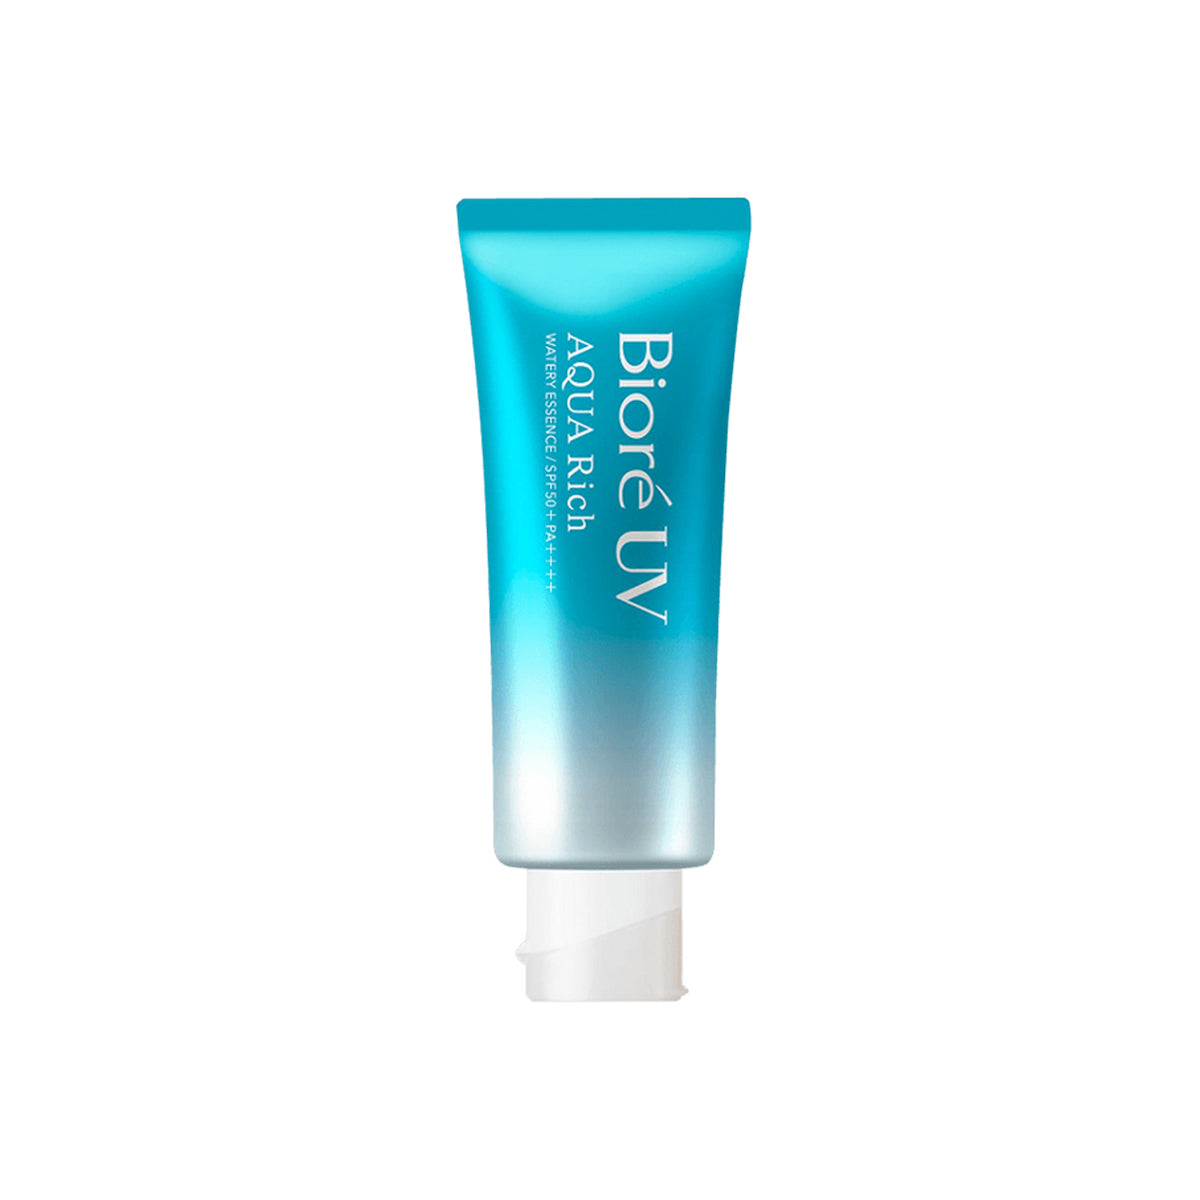 UV Aqua Rich Watery Essence SPF 50+ PA++++ 70g